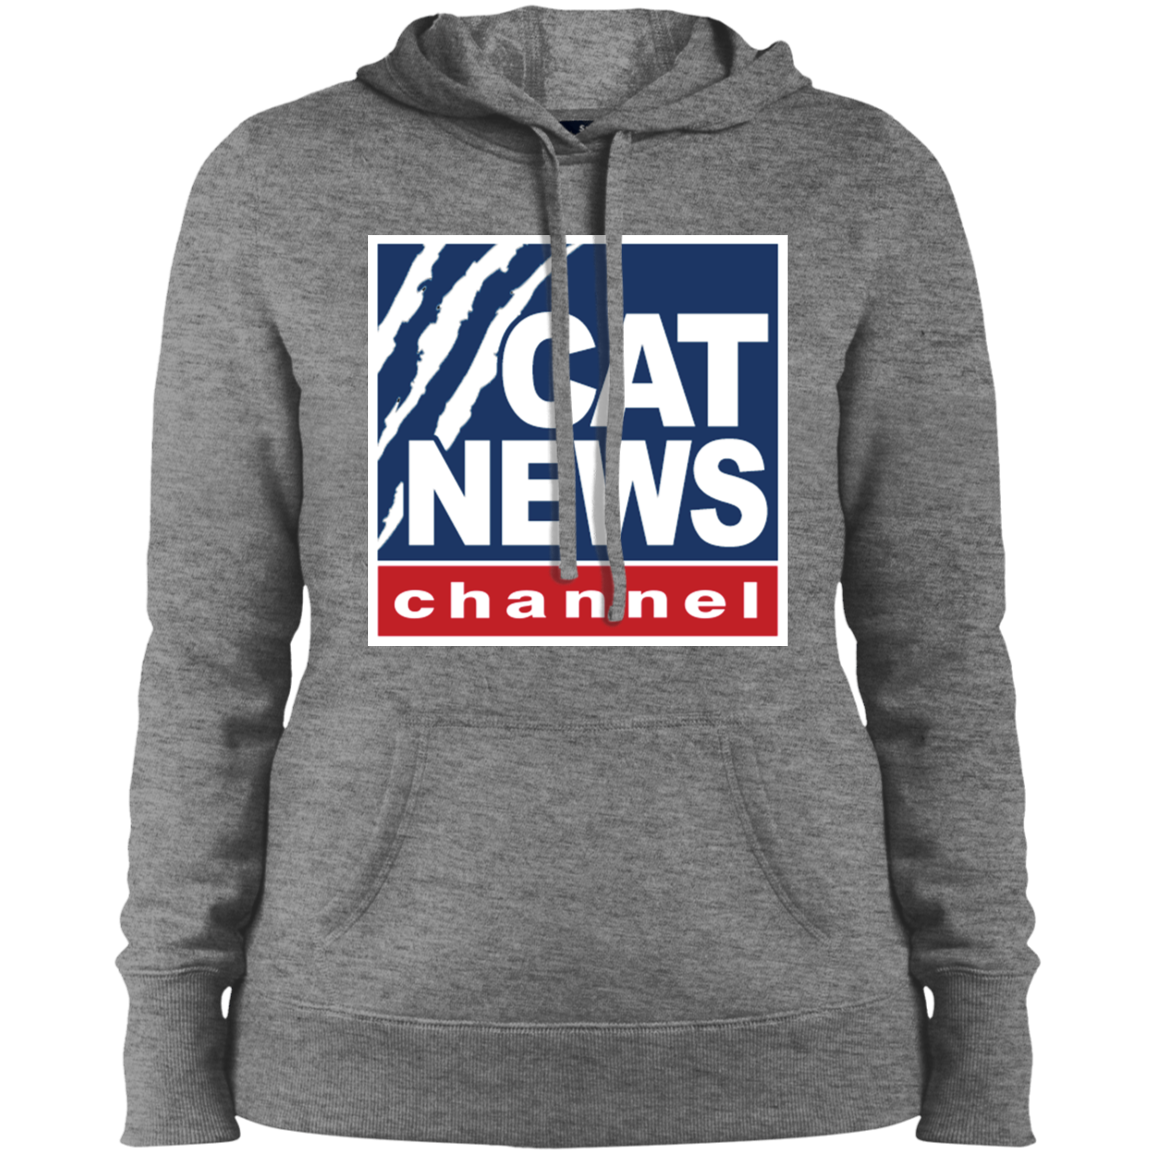 "Cat News" Ladies' Pullover Hooded Sweatshirt